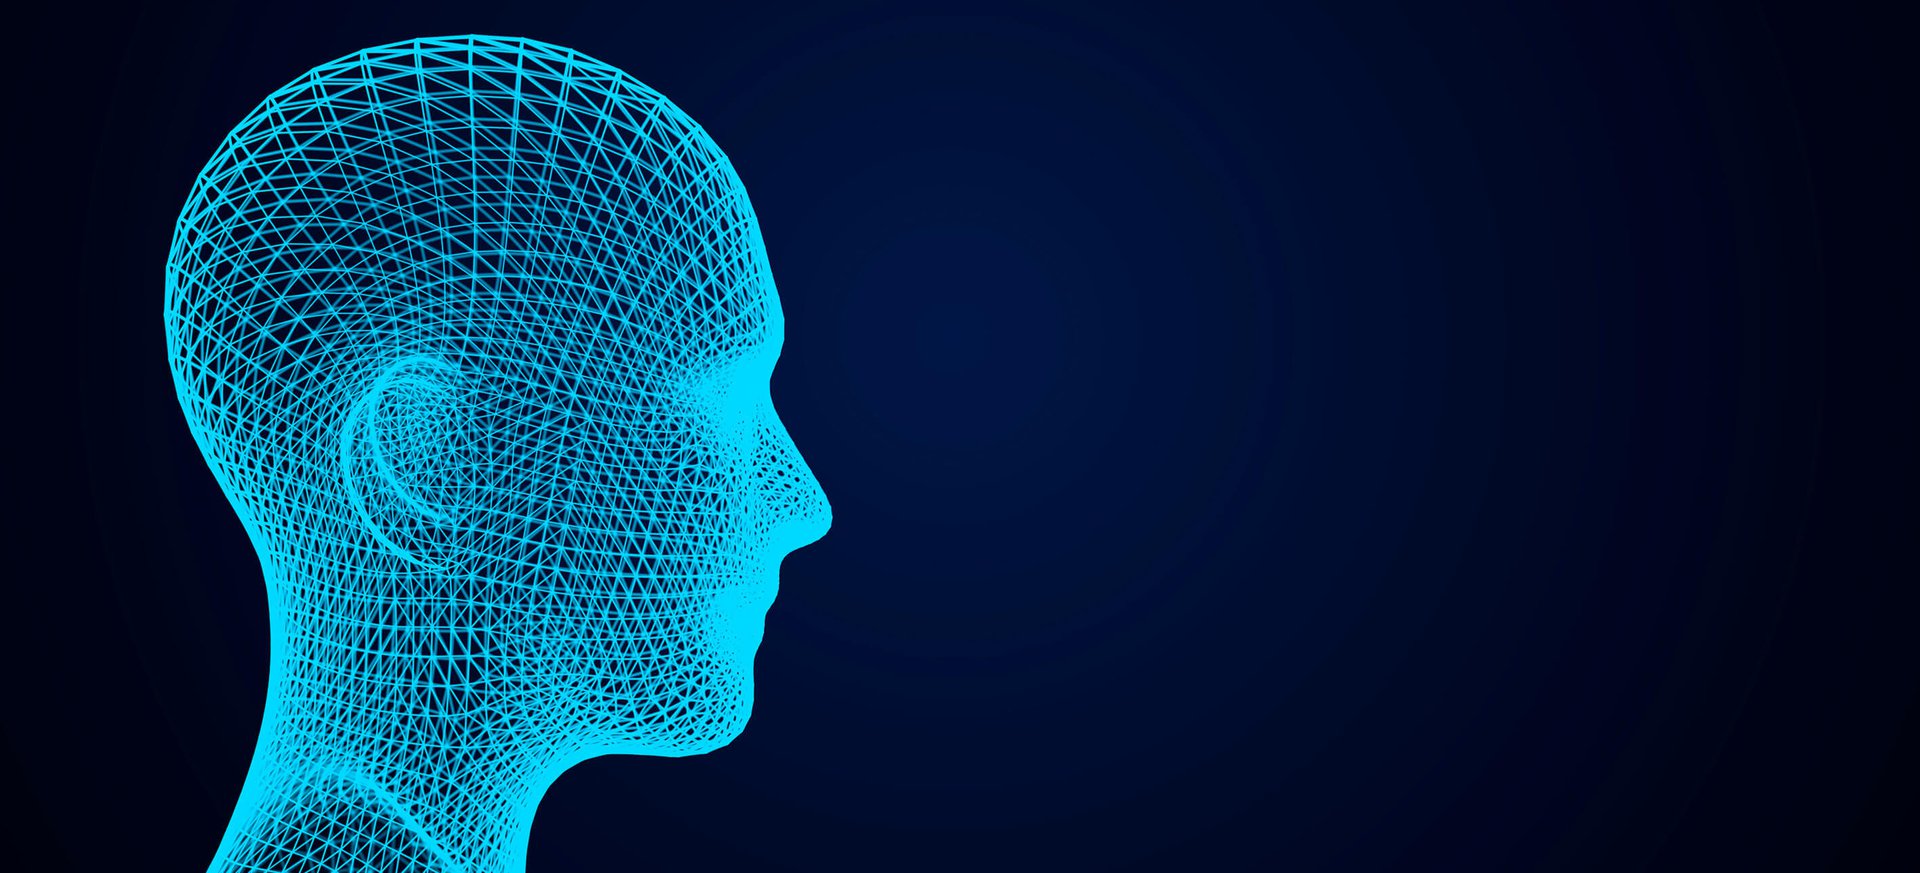 Imagem de perfil de rosto de pessoa com linhas em 3D.